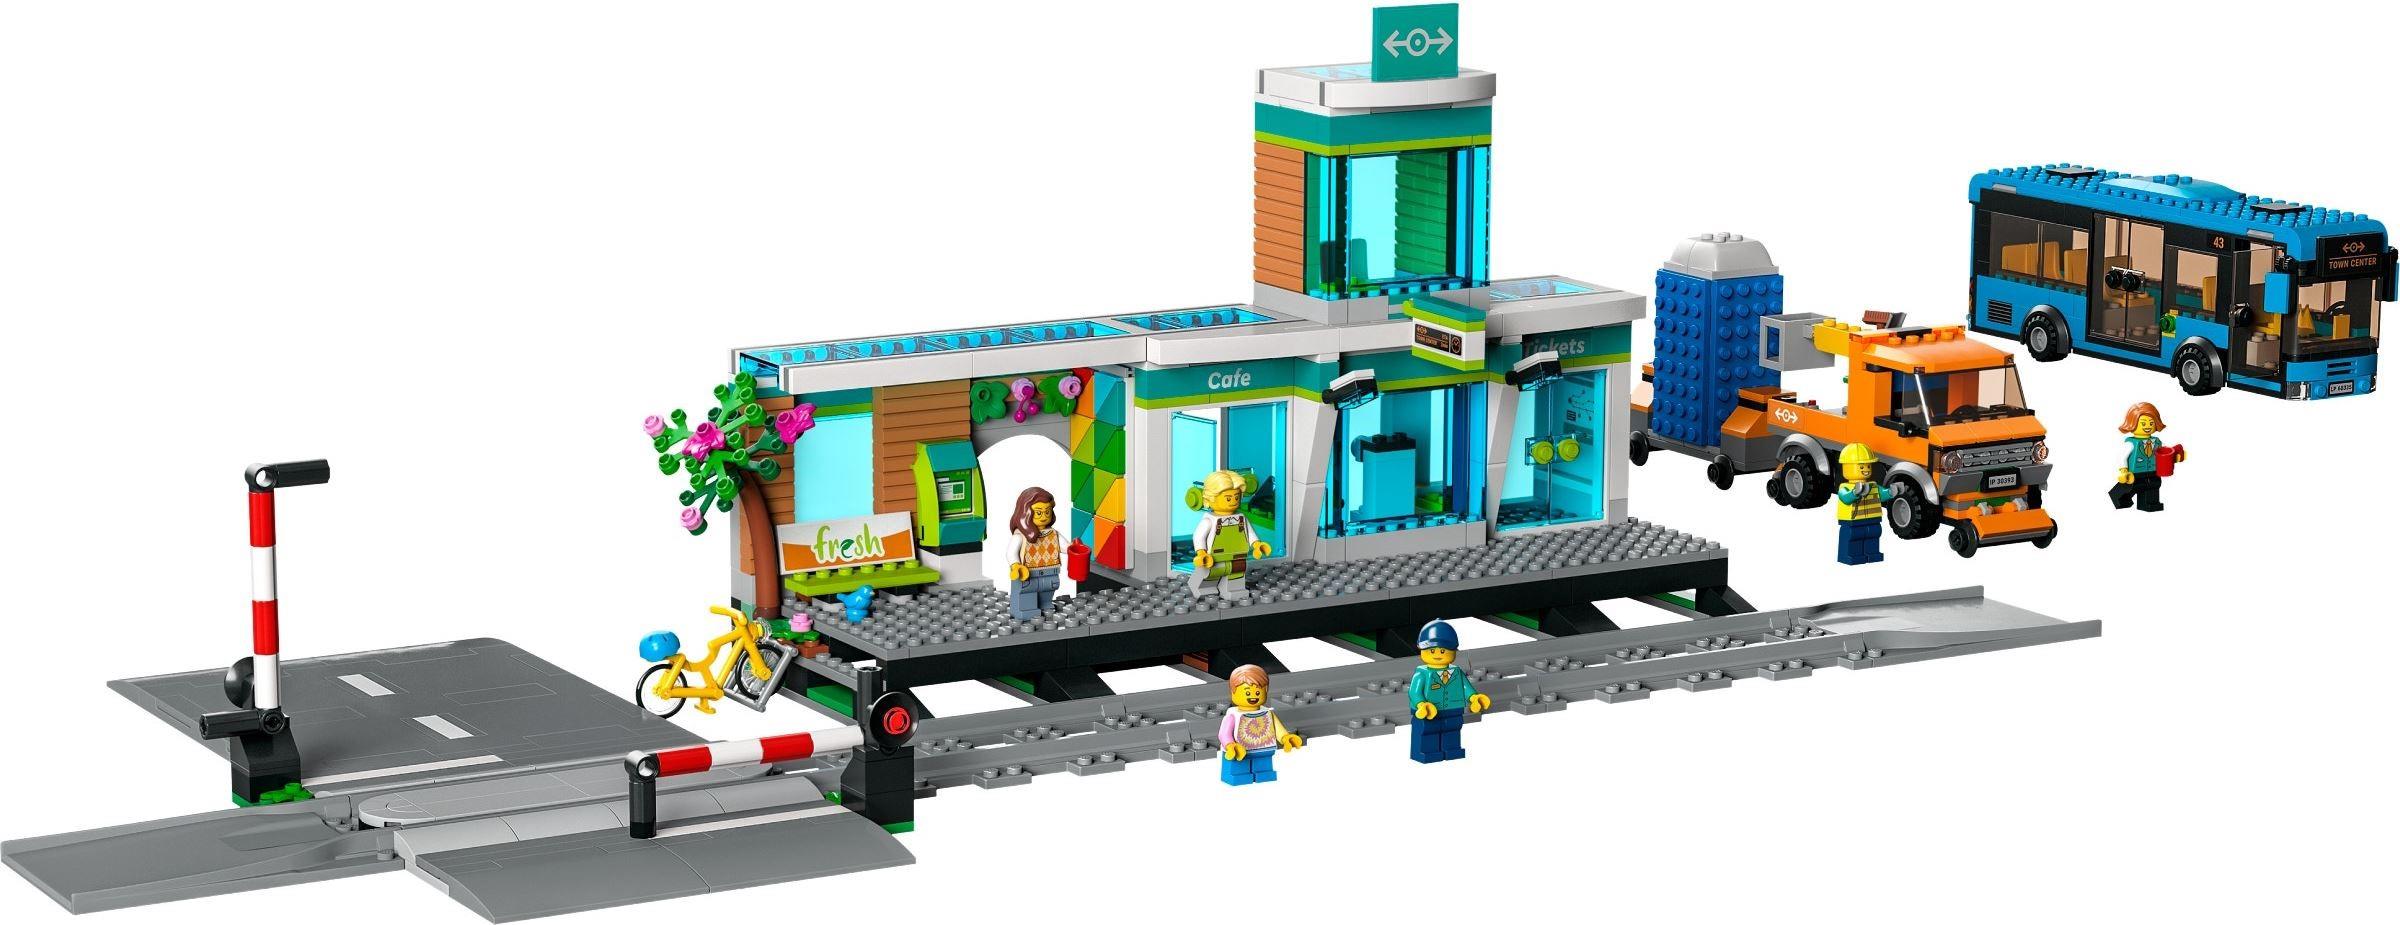 patrulje Radioaktiv Bestemt LEGO 60335 City Train Station | BrickEconomy